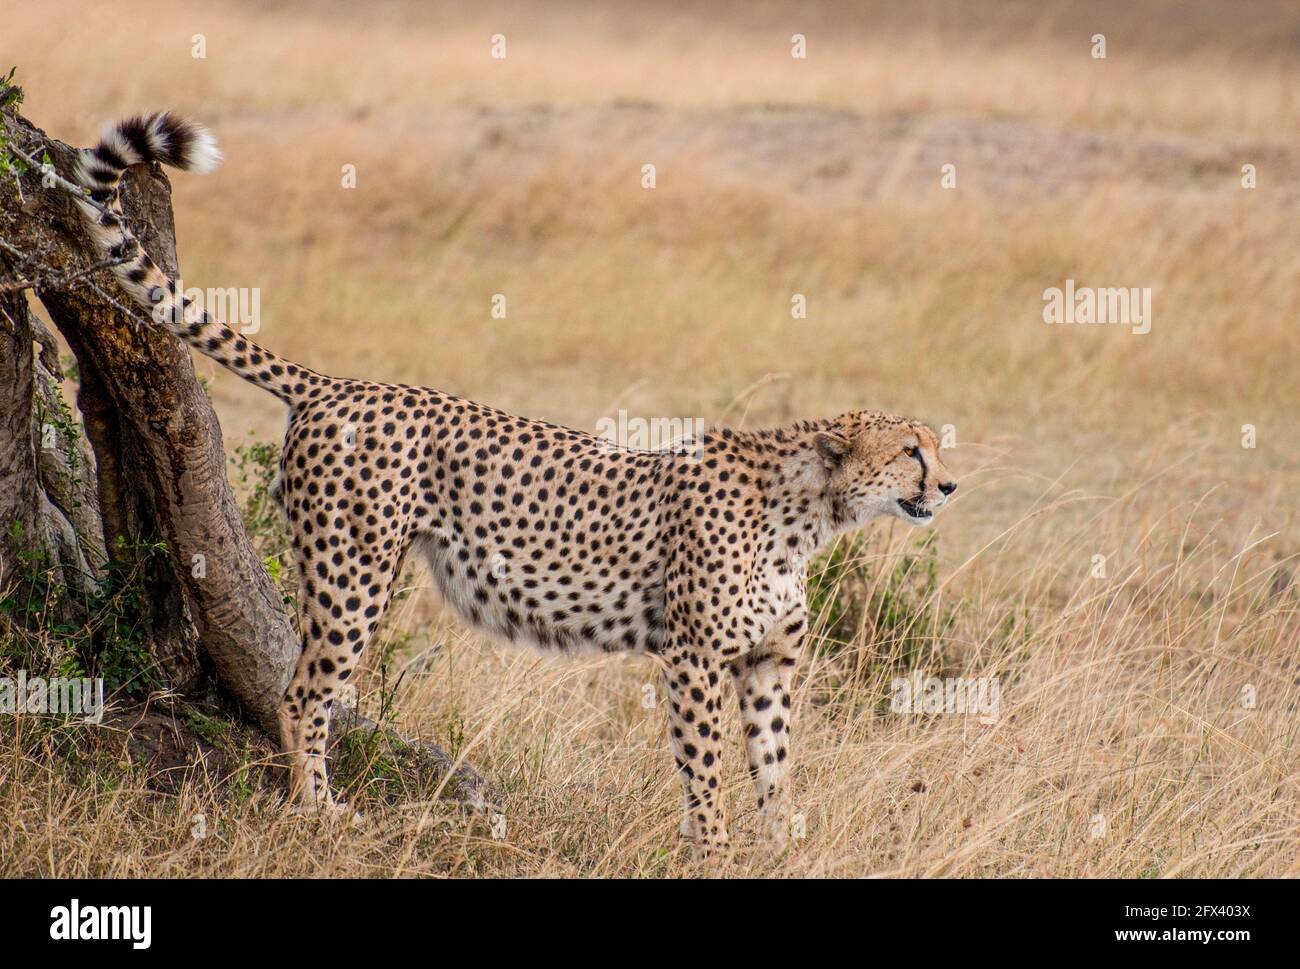 cheetah near a tree Stock Photo